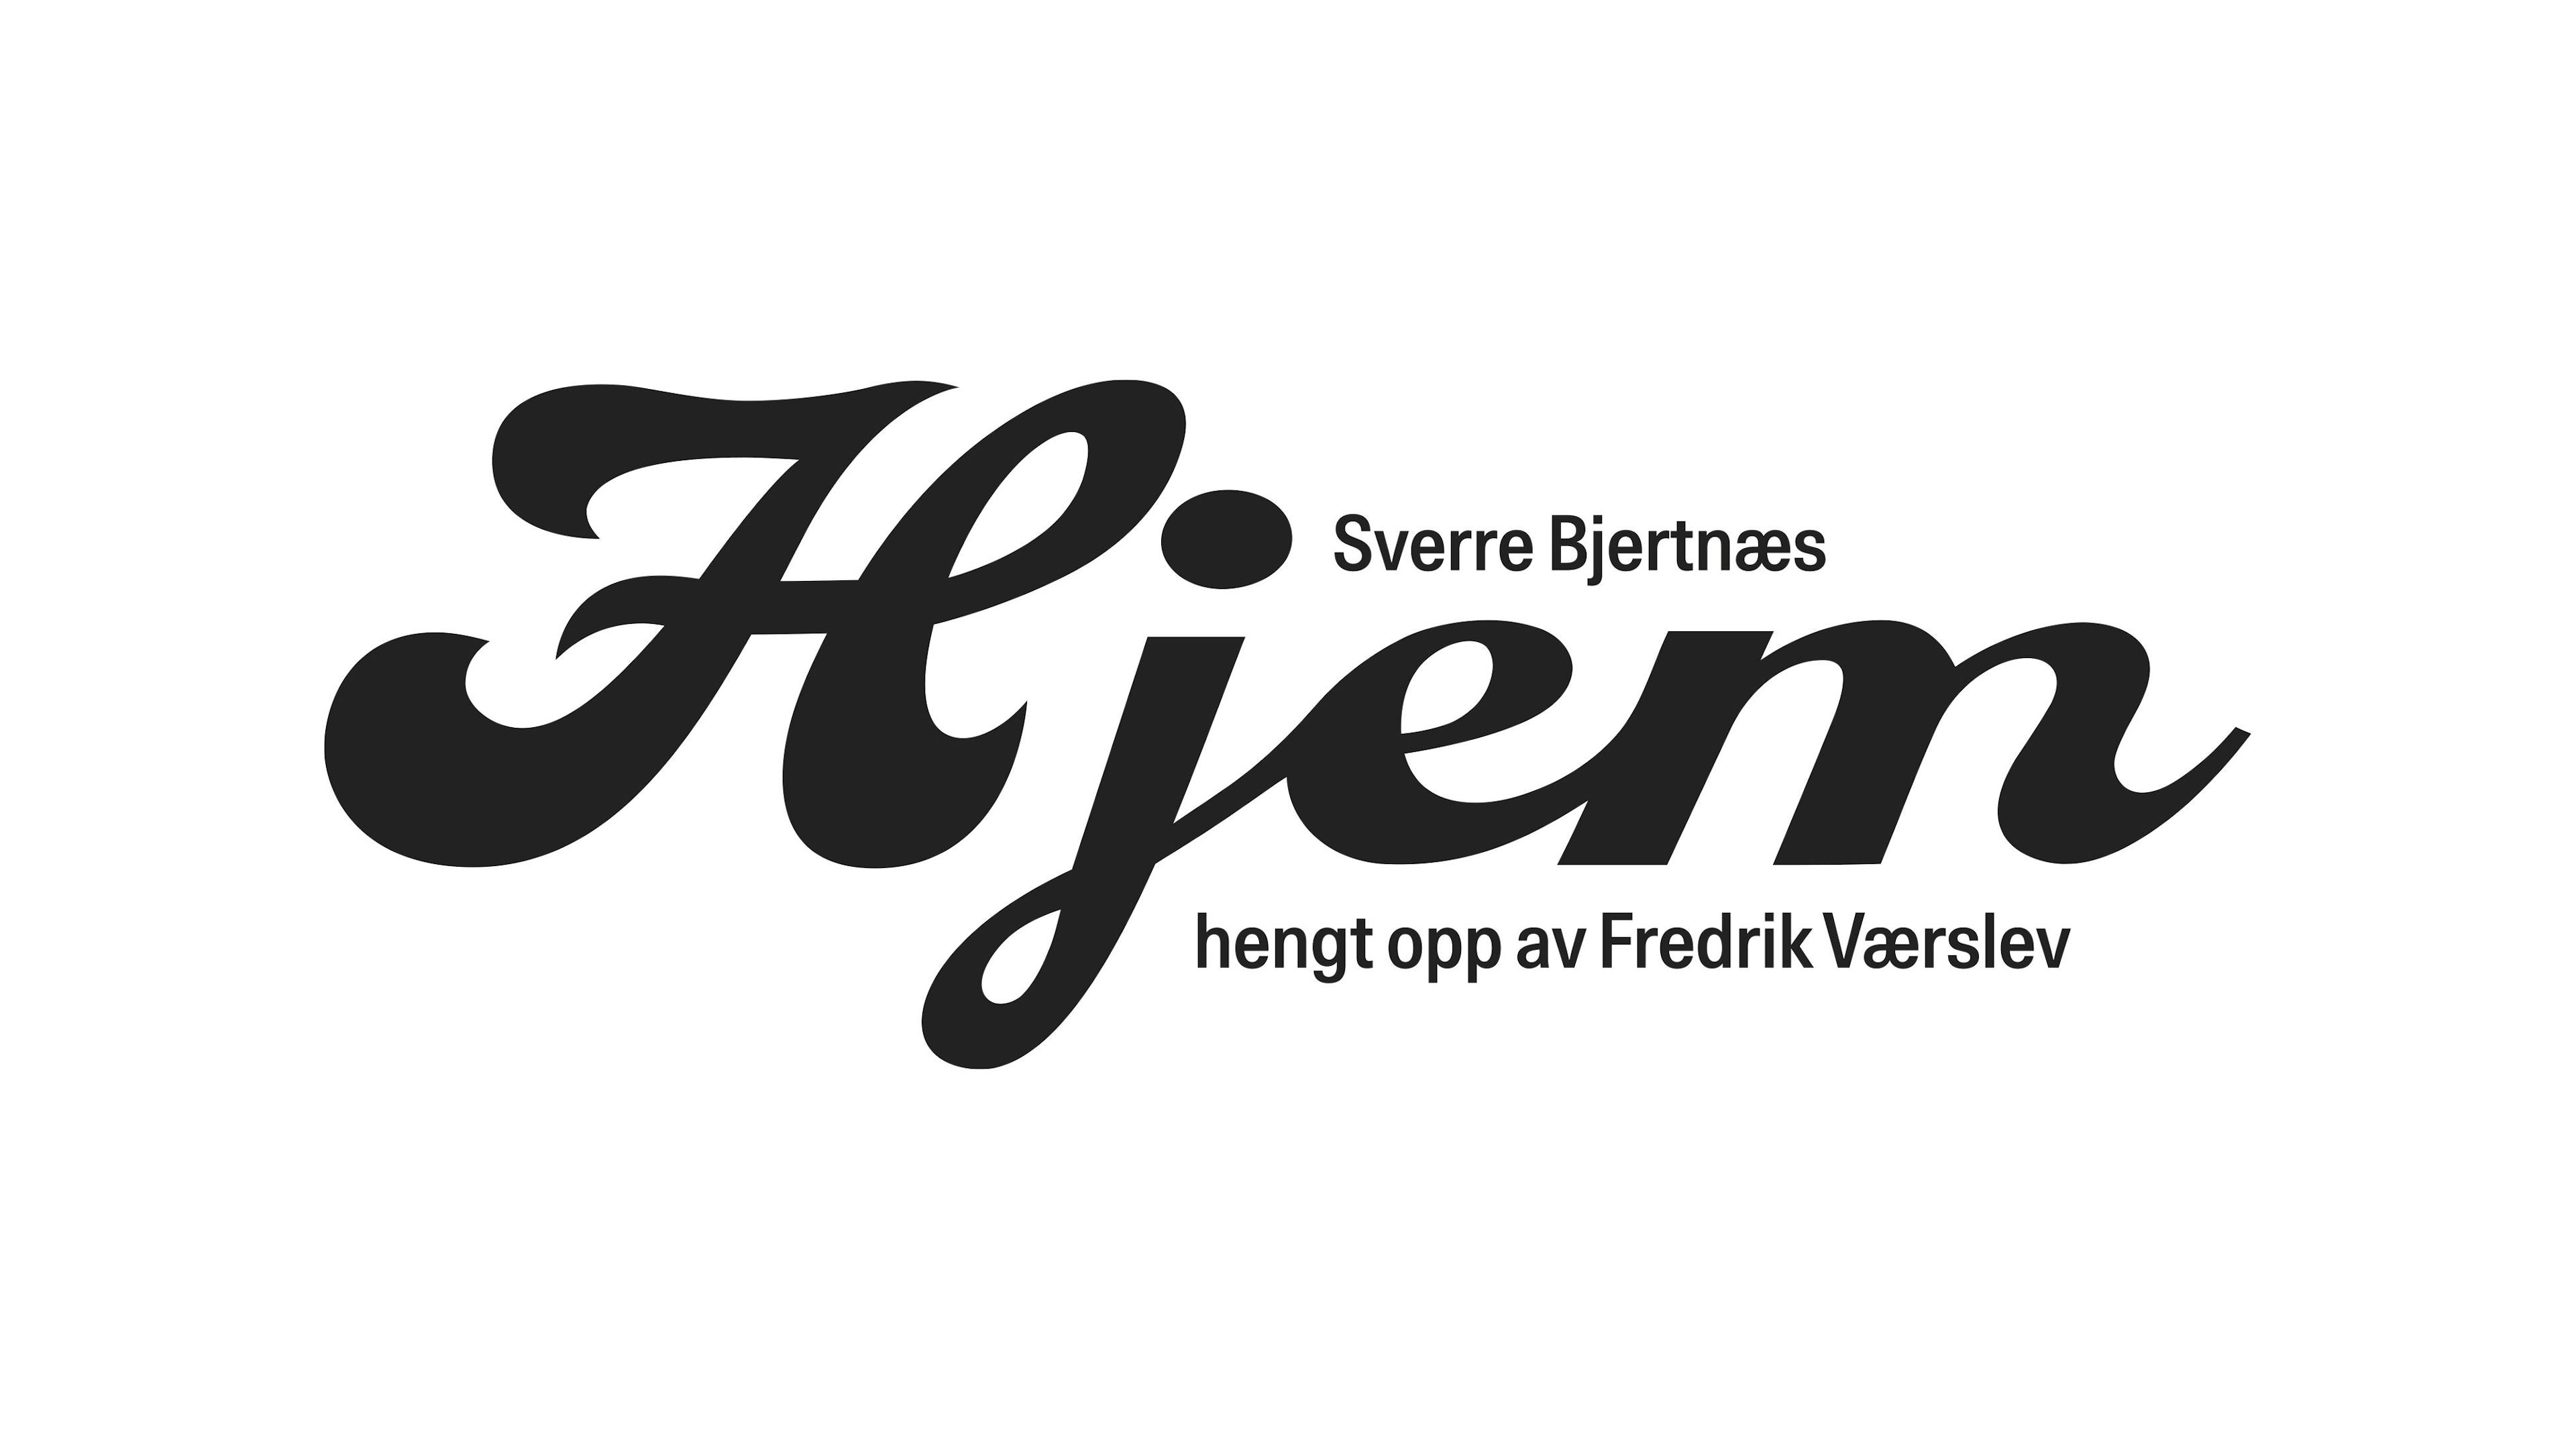 Title illustration for the exhibition 'Sverre Bjertnæs – HJEM'